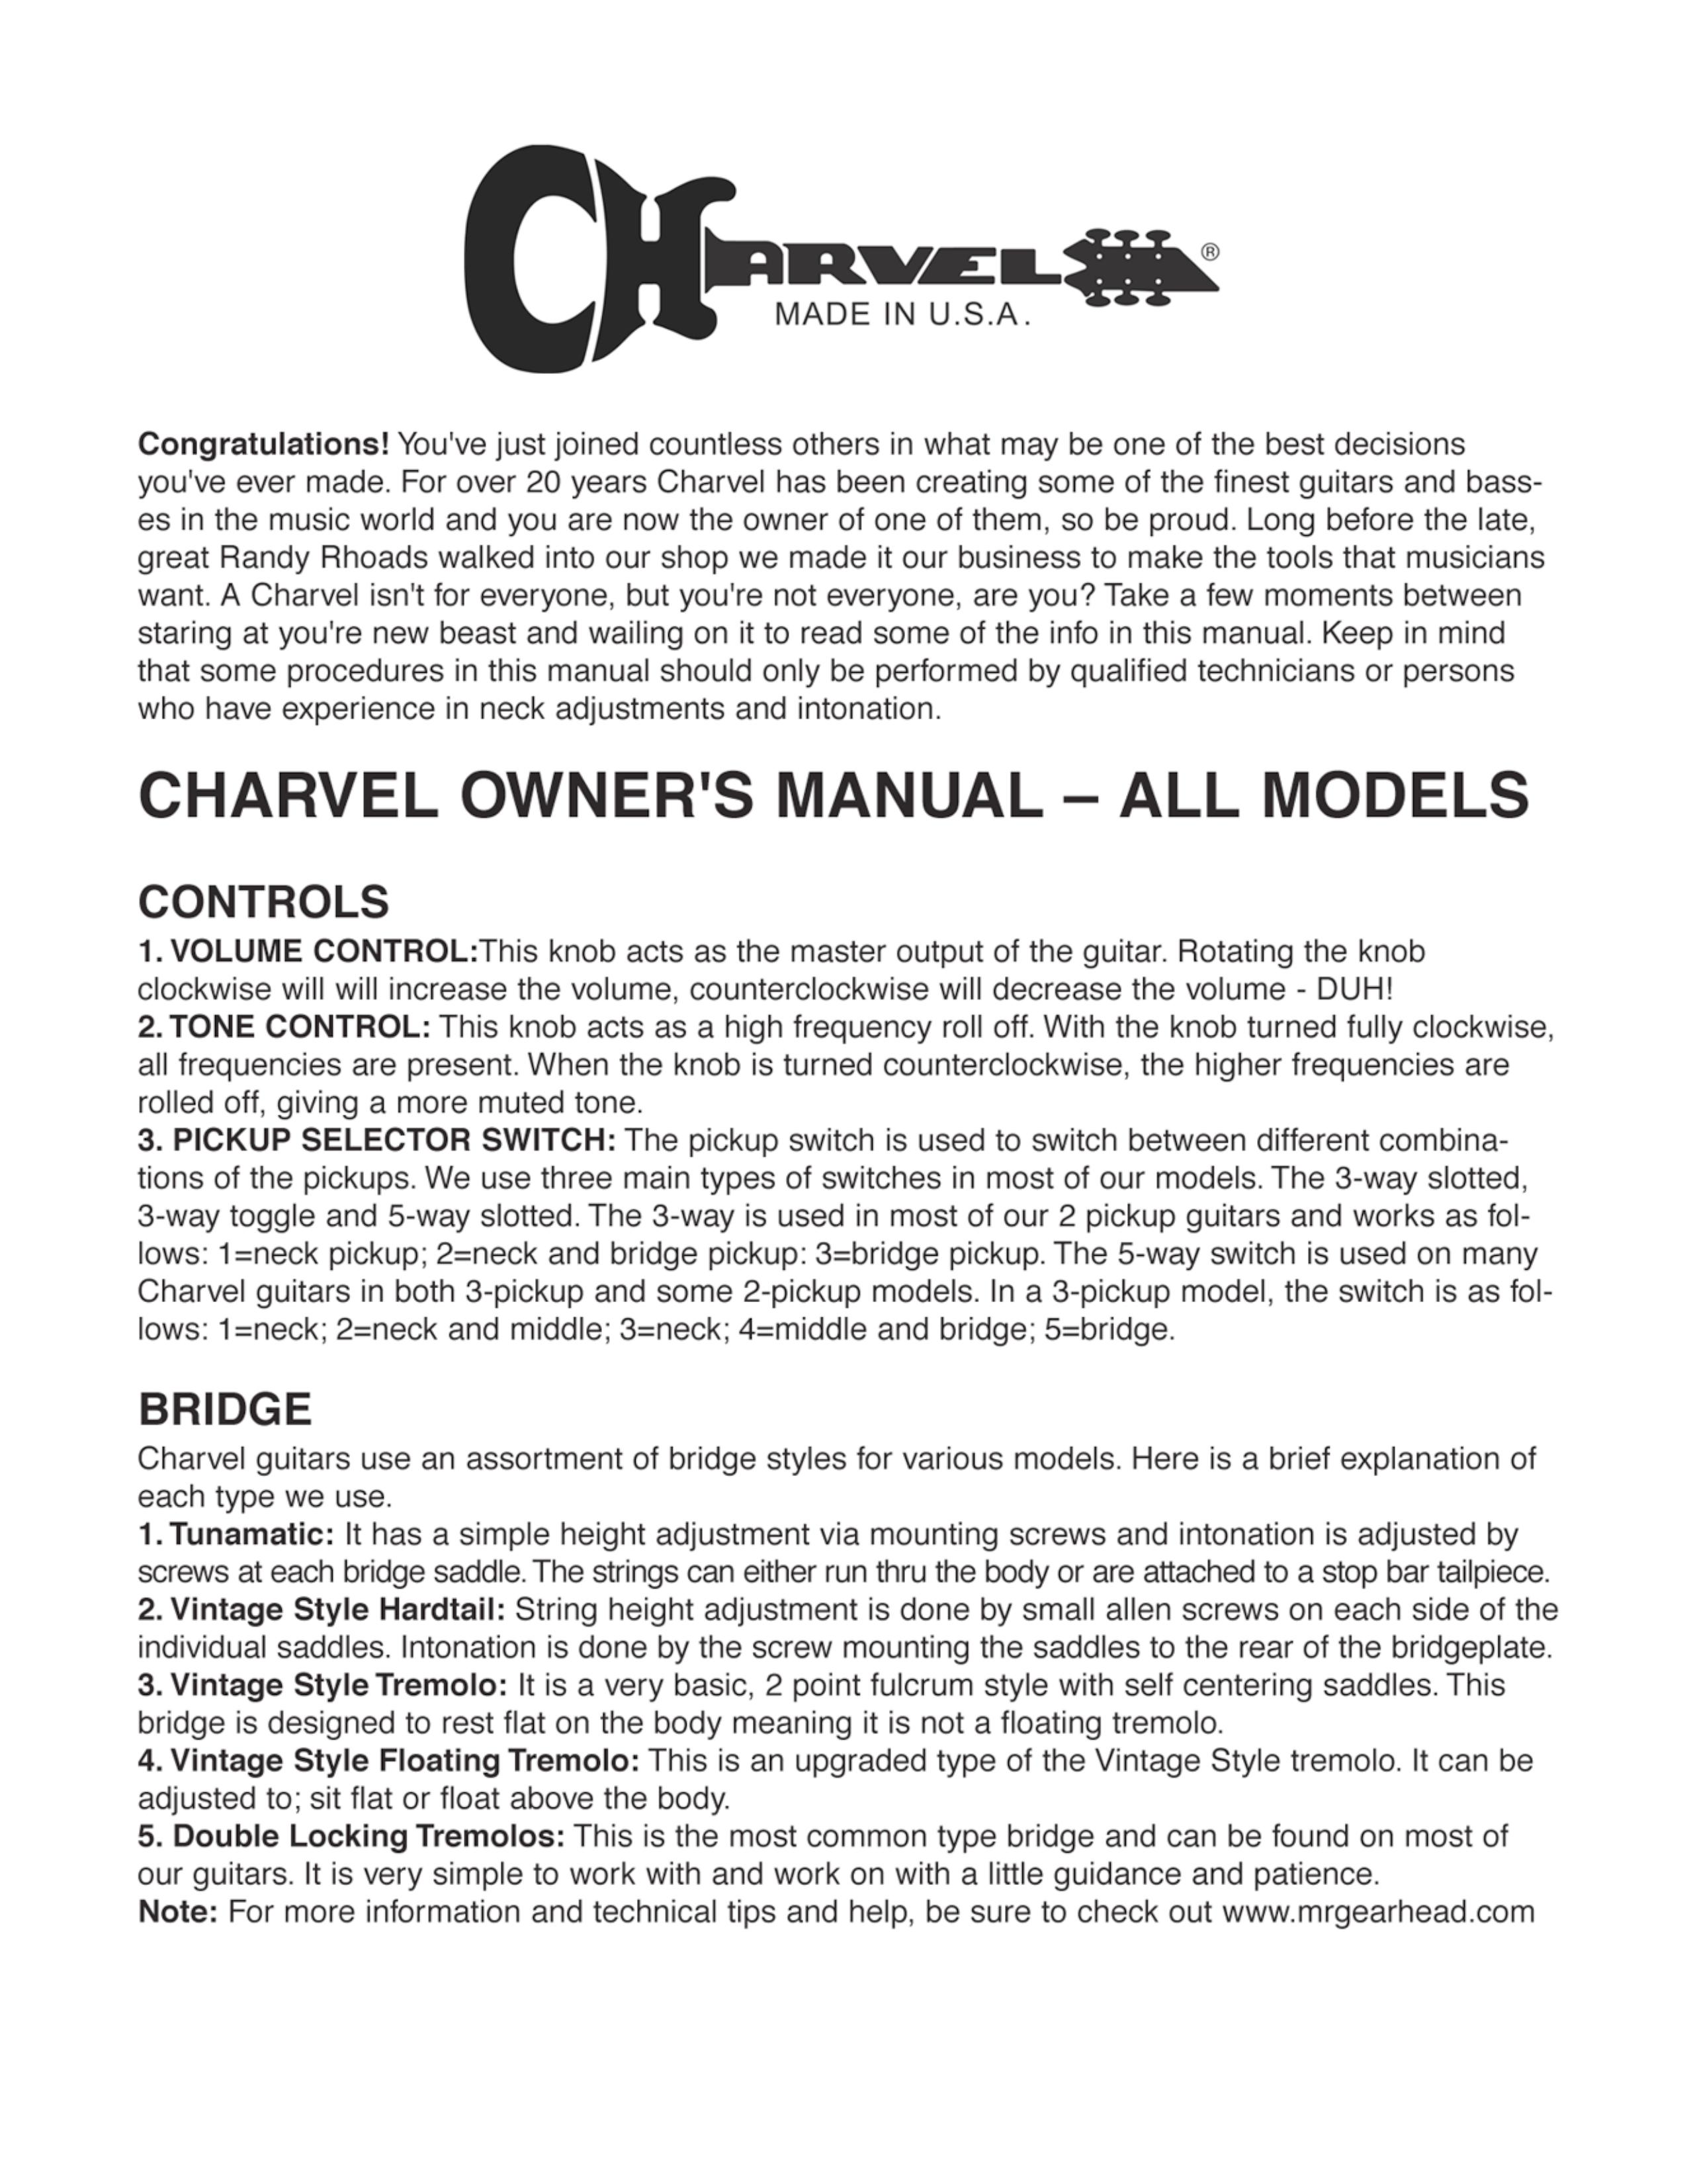 Charvel Star Guitar Guitar User Manual